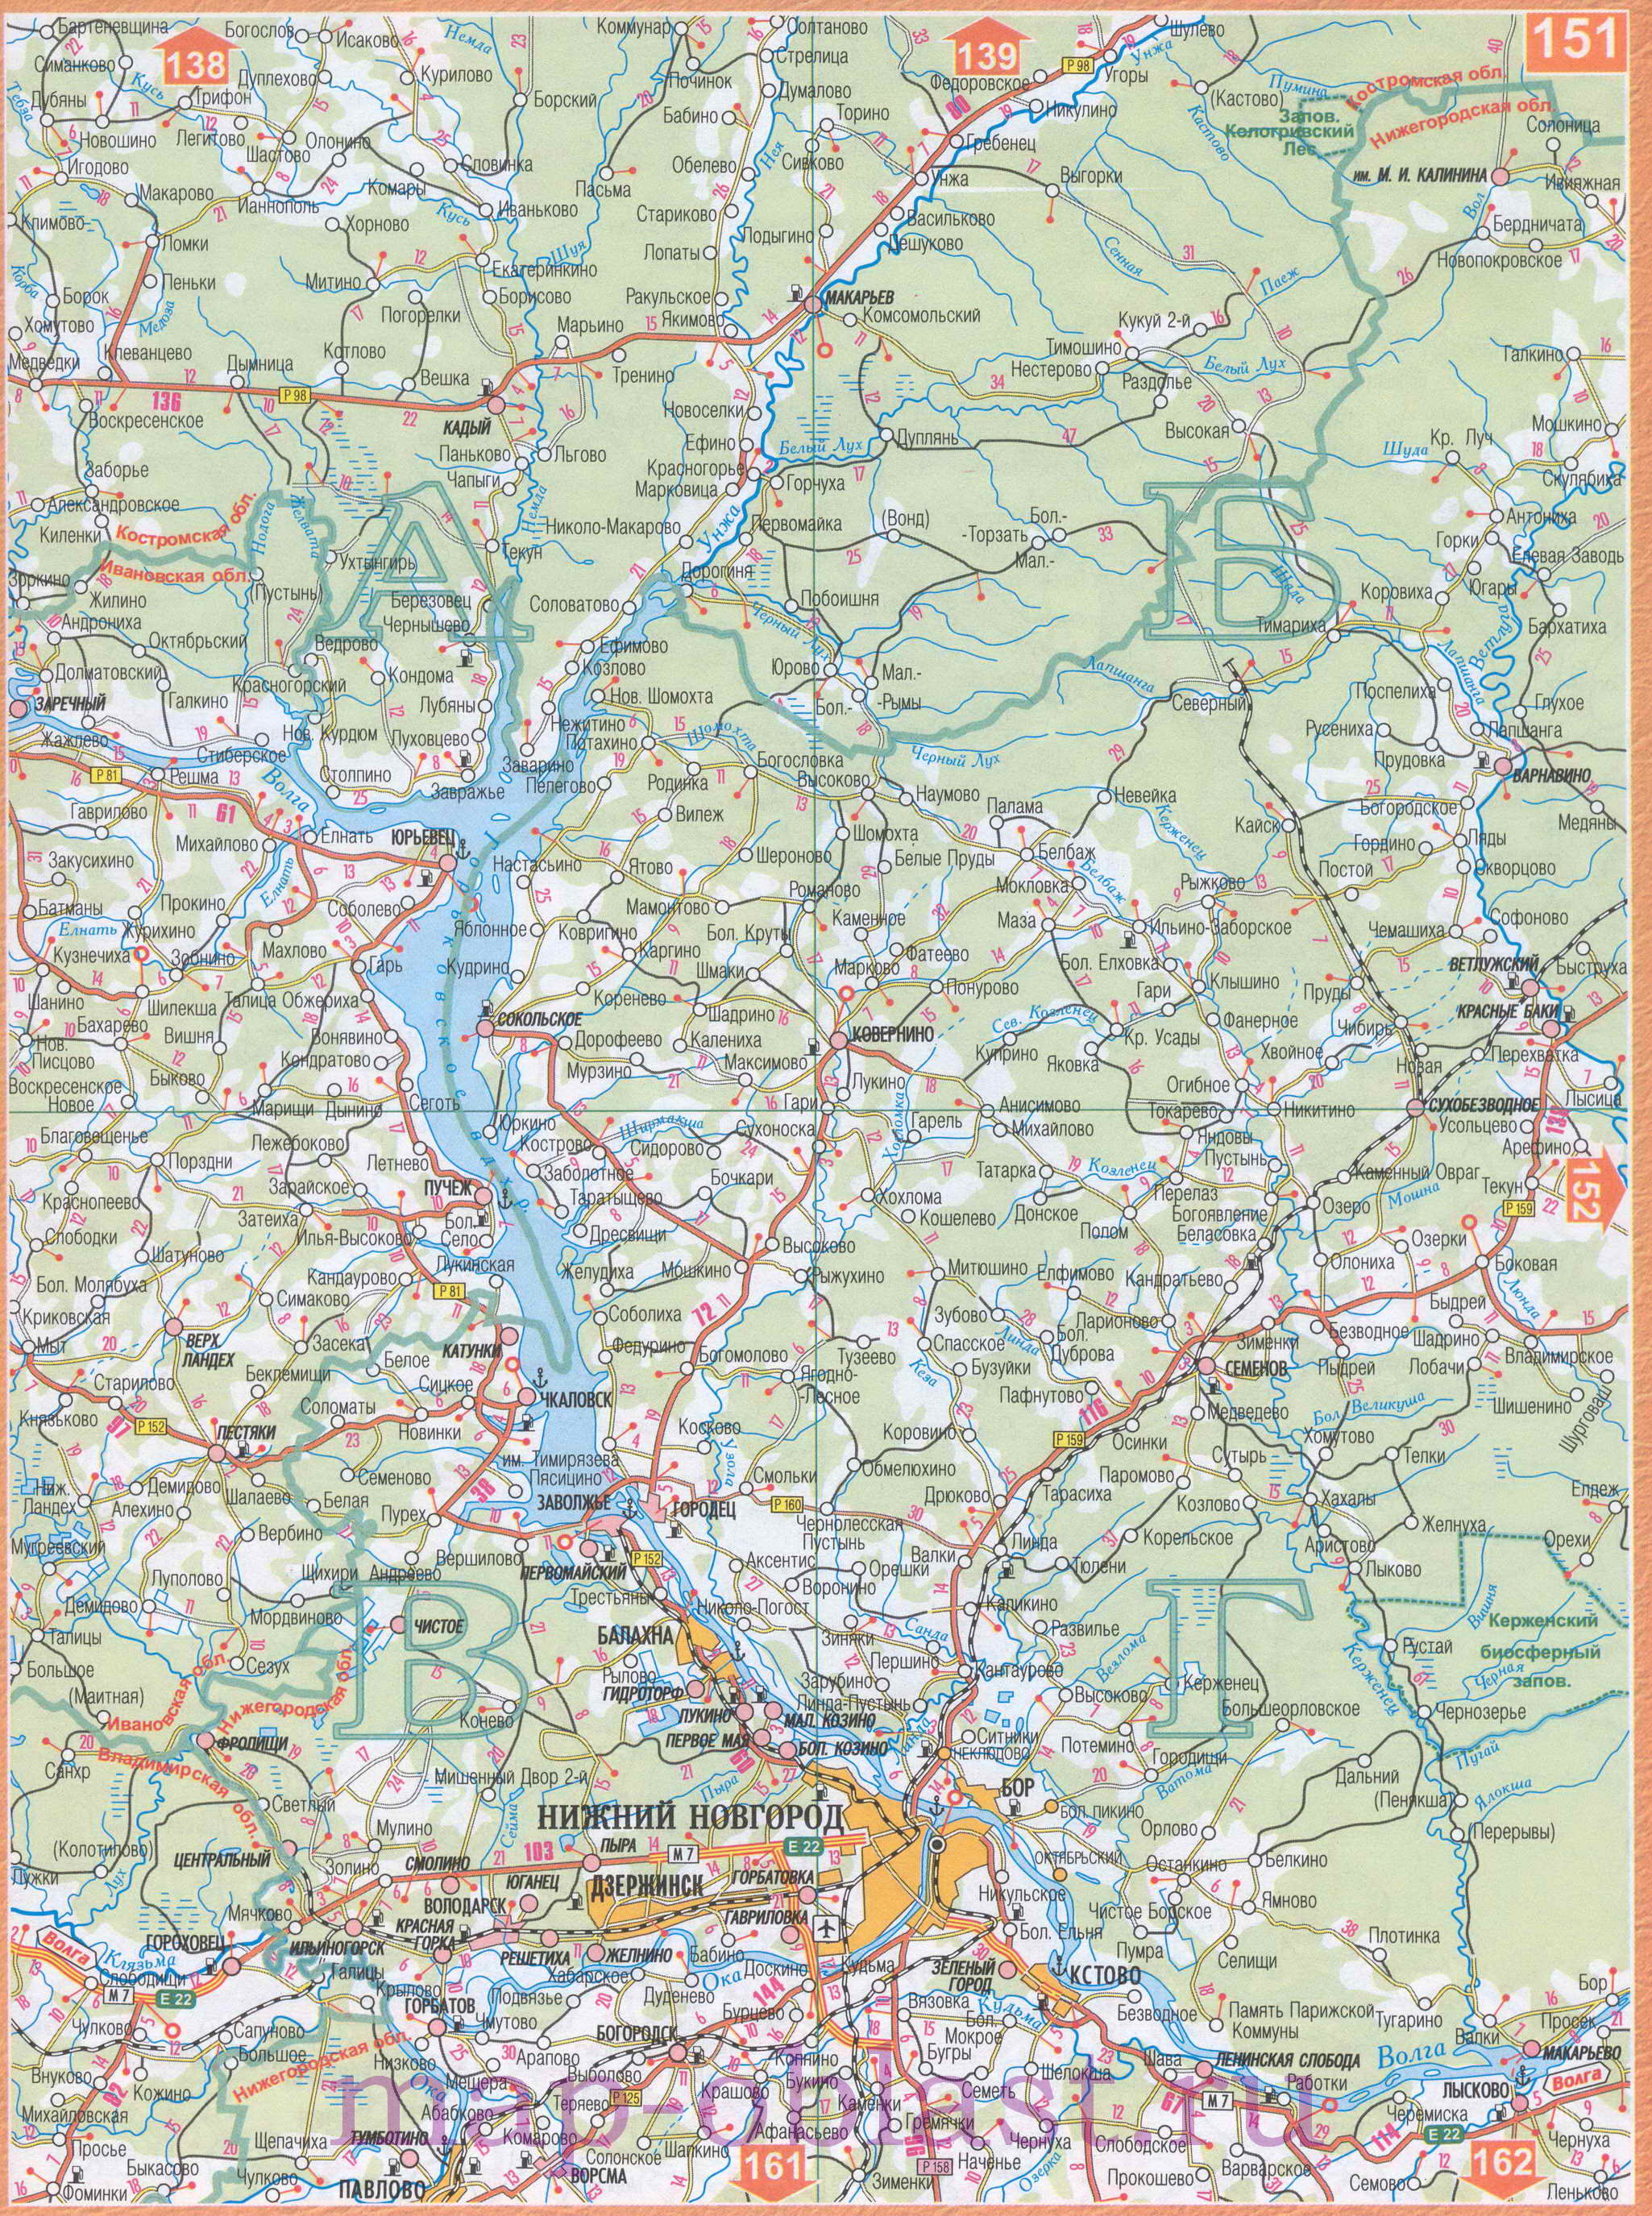 Карта Волго-Вятского экономического района. Подробная карта автодорог Волго-Вятского региона России, B1 - 